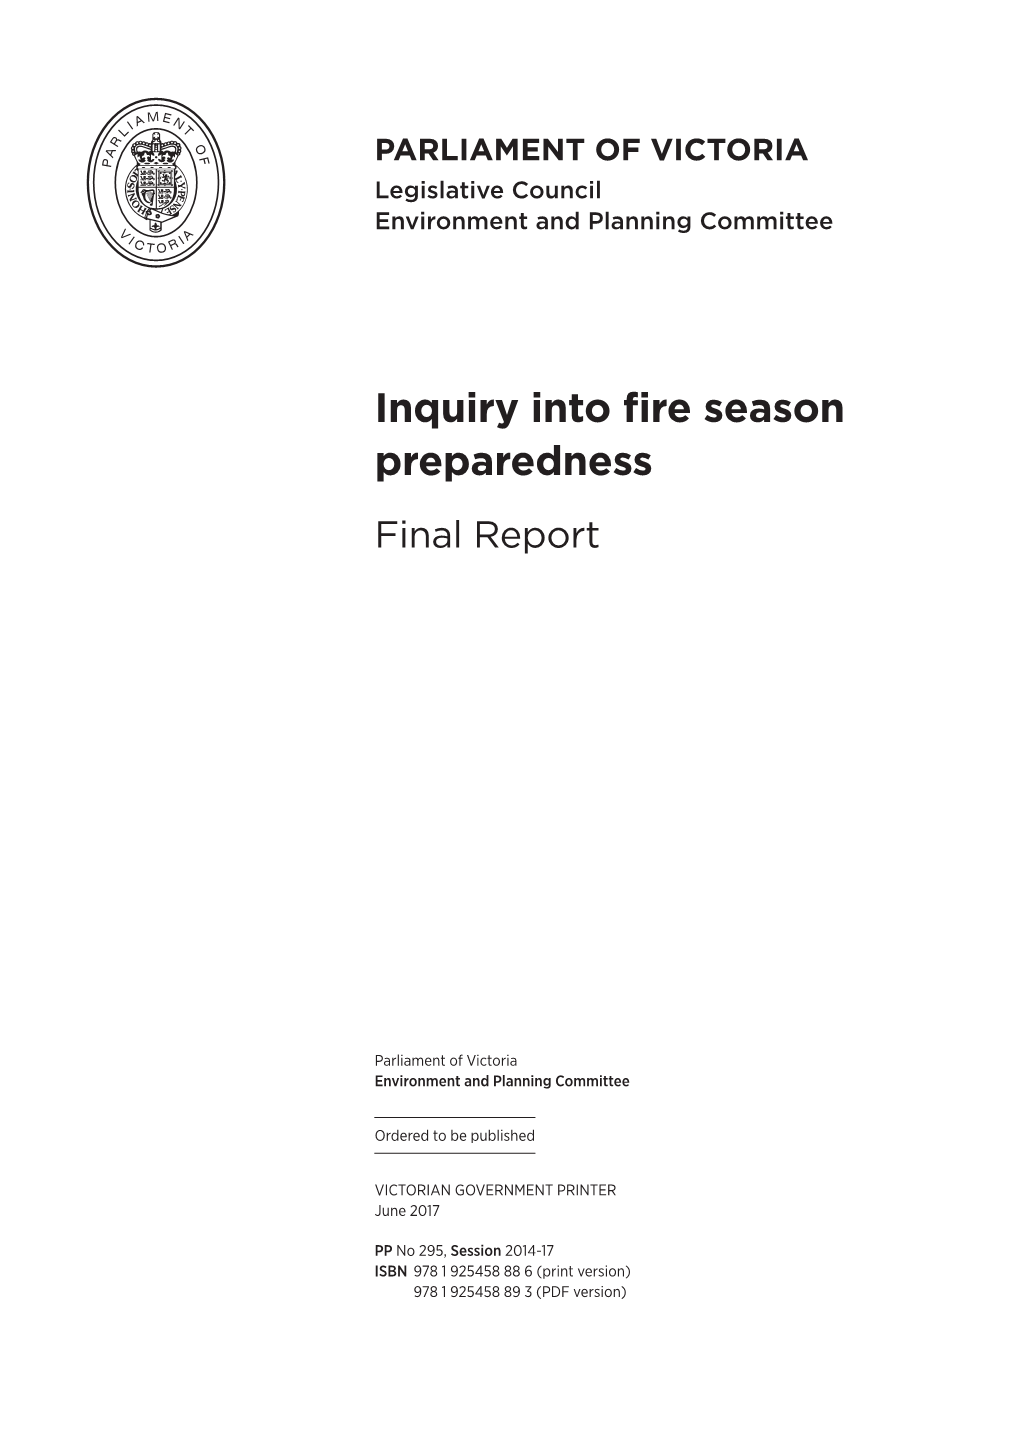 Inquiry Into Fire Season Preparedness Final Report